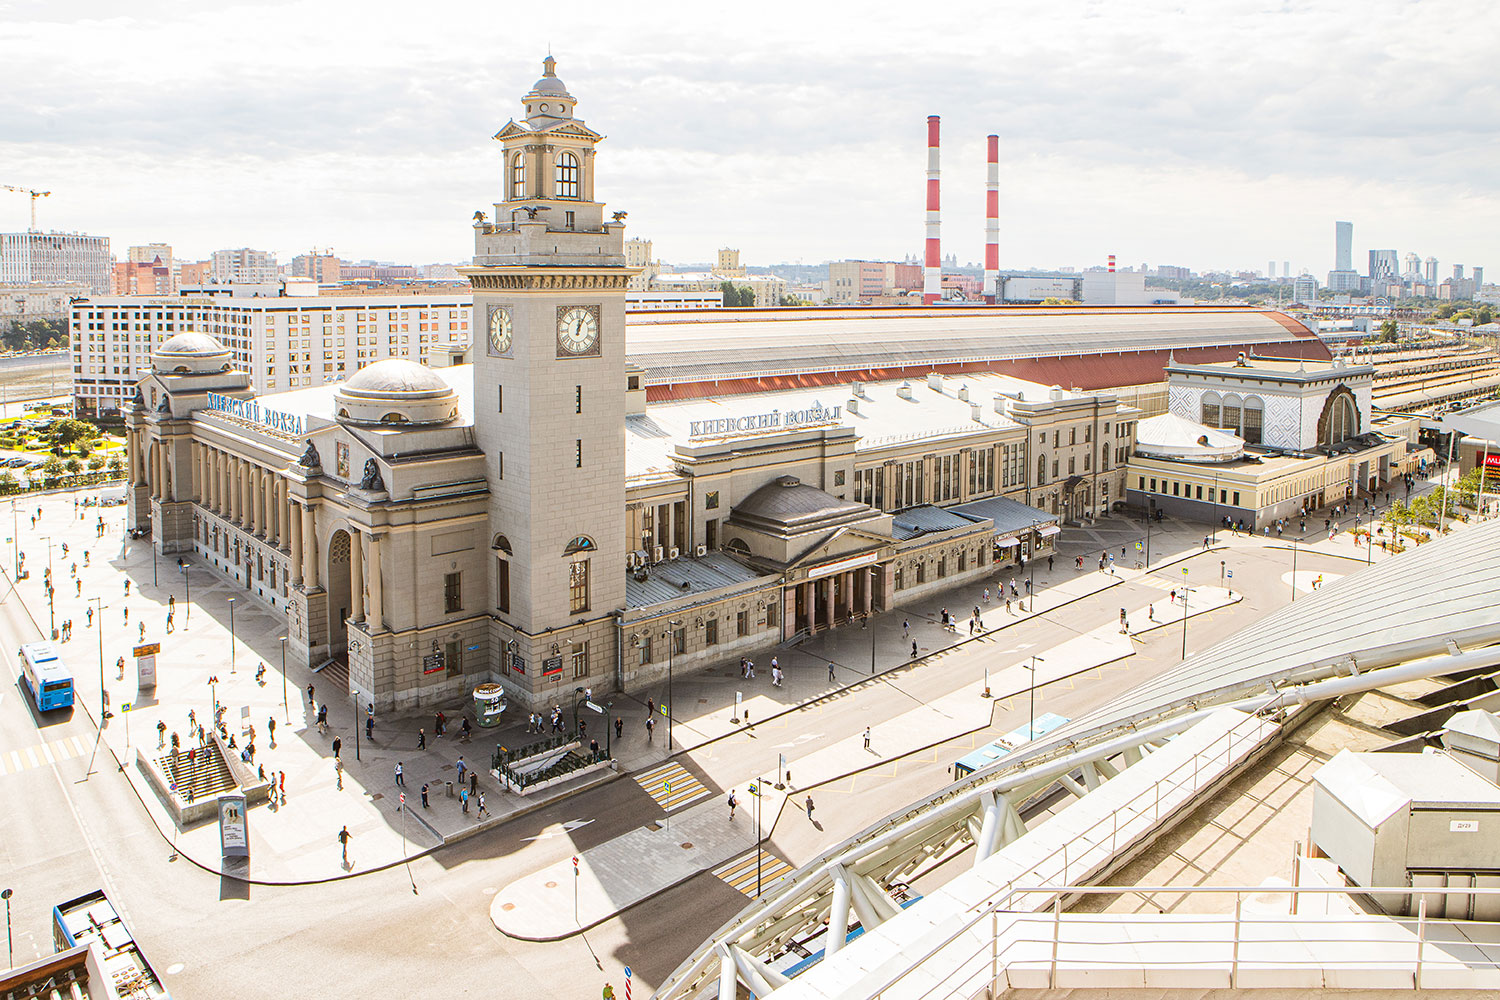 площадь киевского вокзала в москве